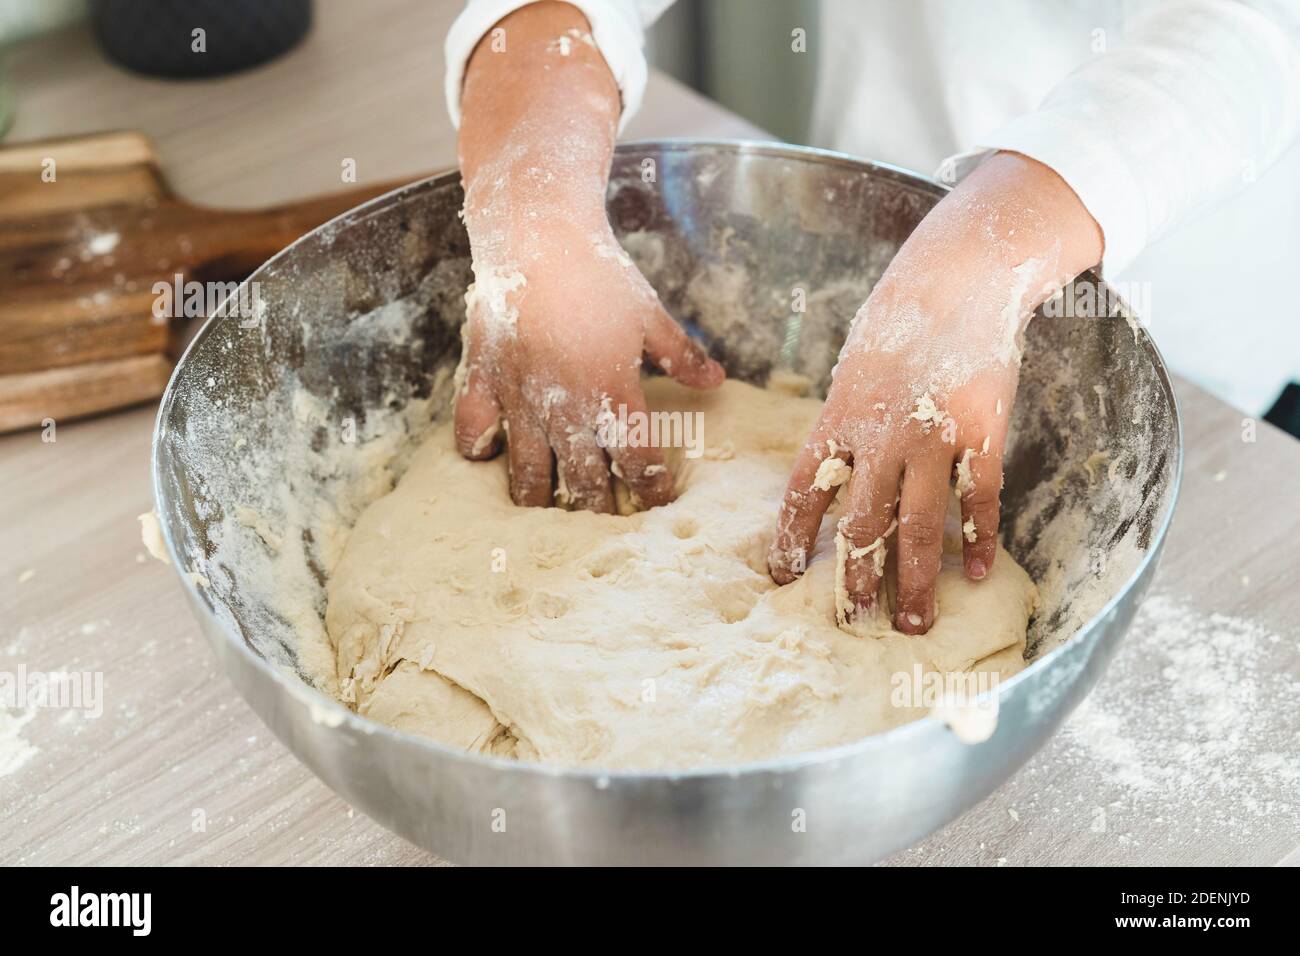 Gros plan des mains de petite fille pétrissant le mélange pour pizza, pain ou gâteau - farine, levure de bière, huile d'olive et l'eau pour compléter la pâte - concept Banque D'Images